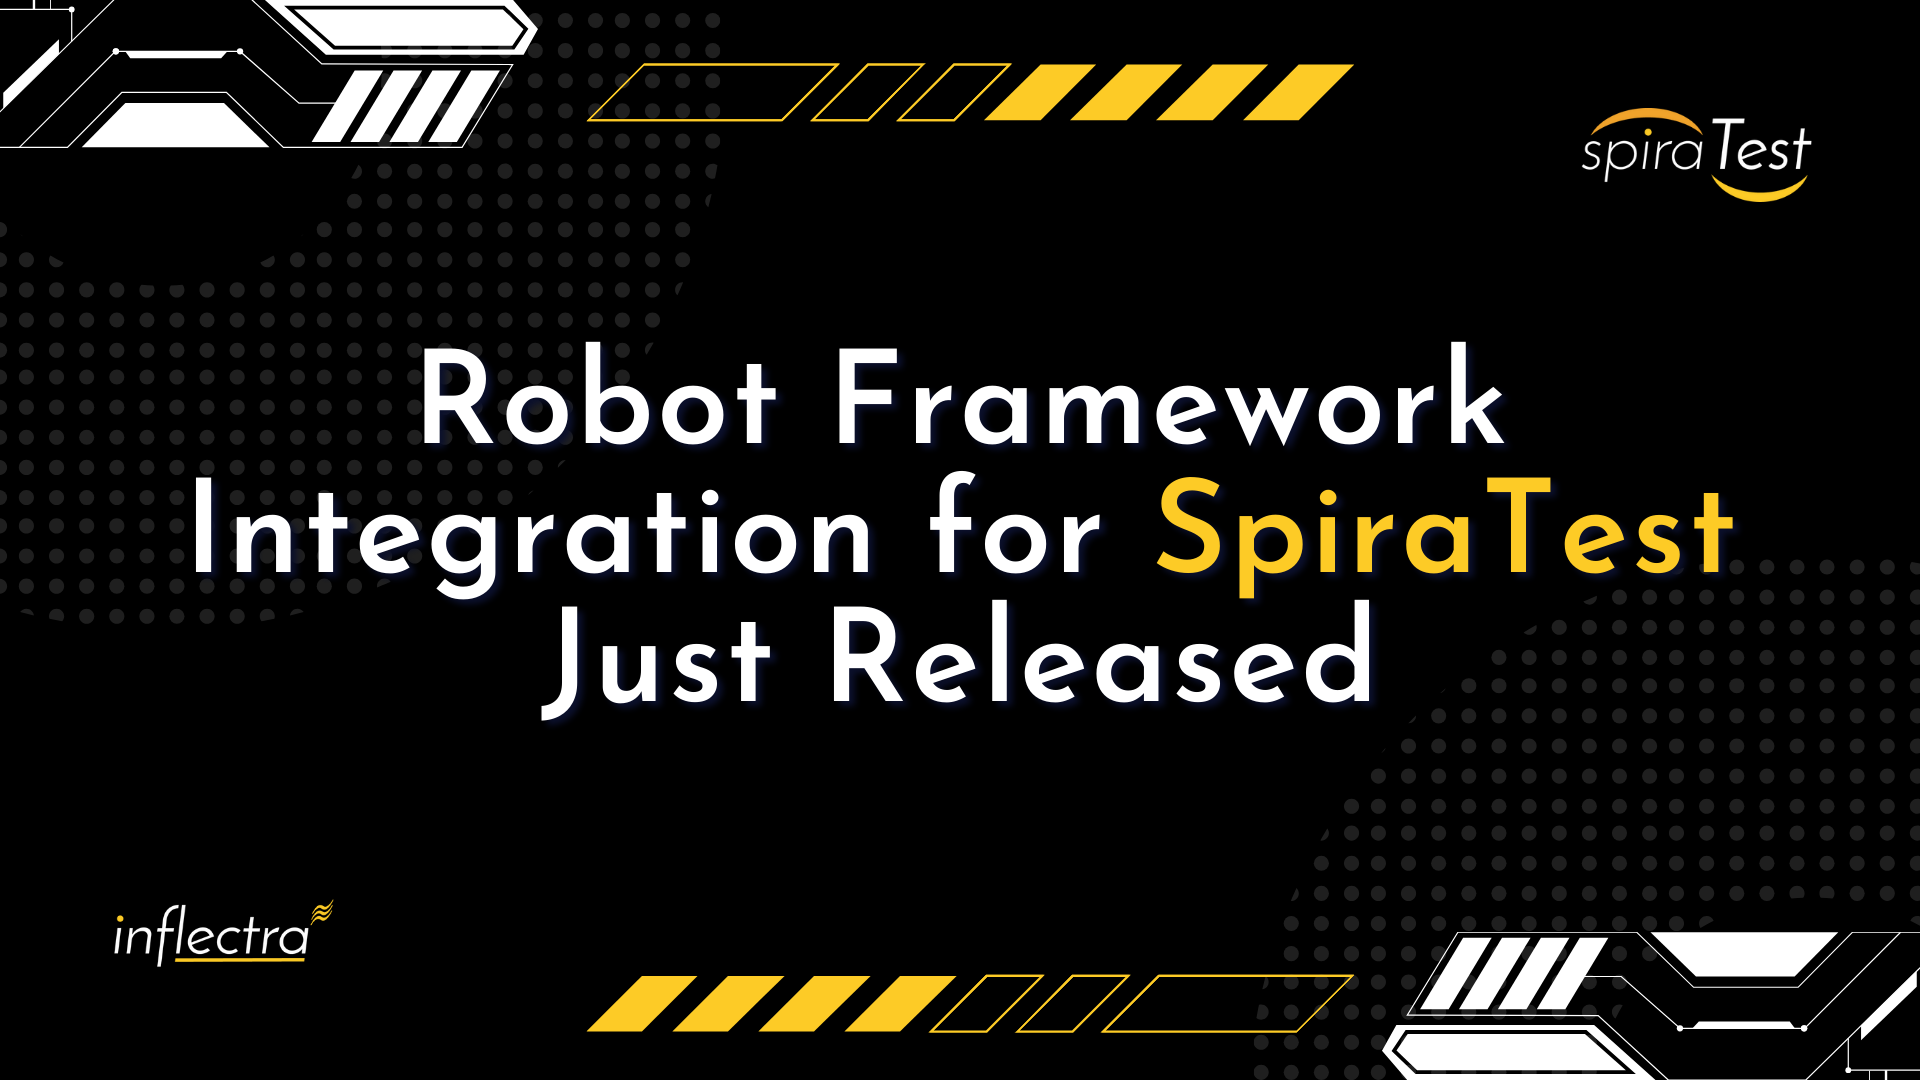 robot-framework-integration-for-spiratest-just-released-image